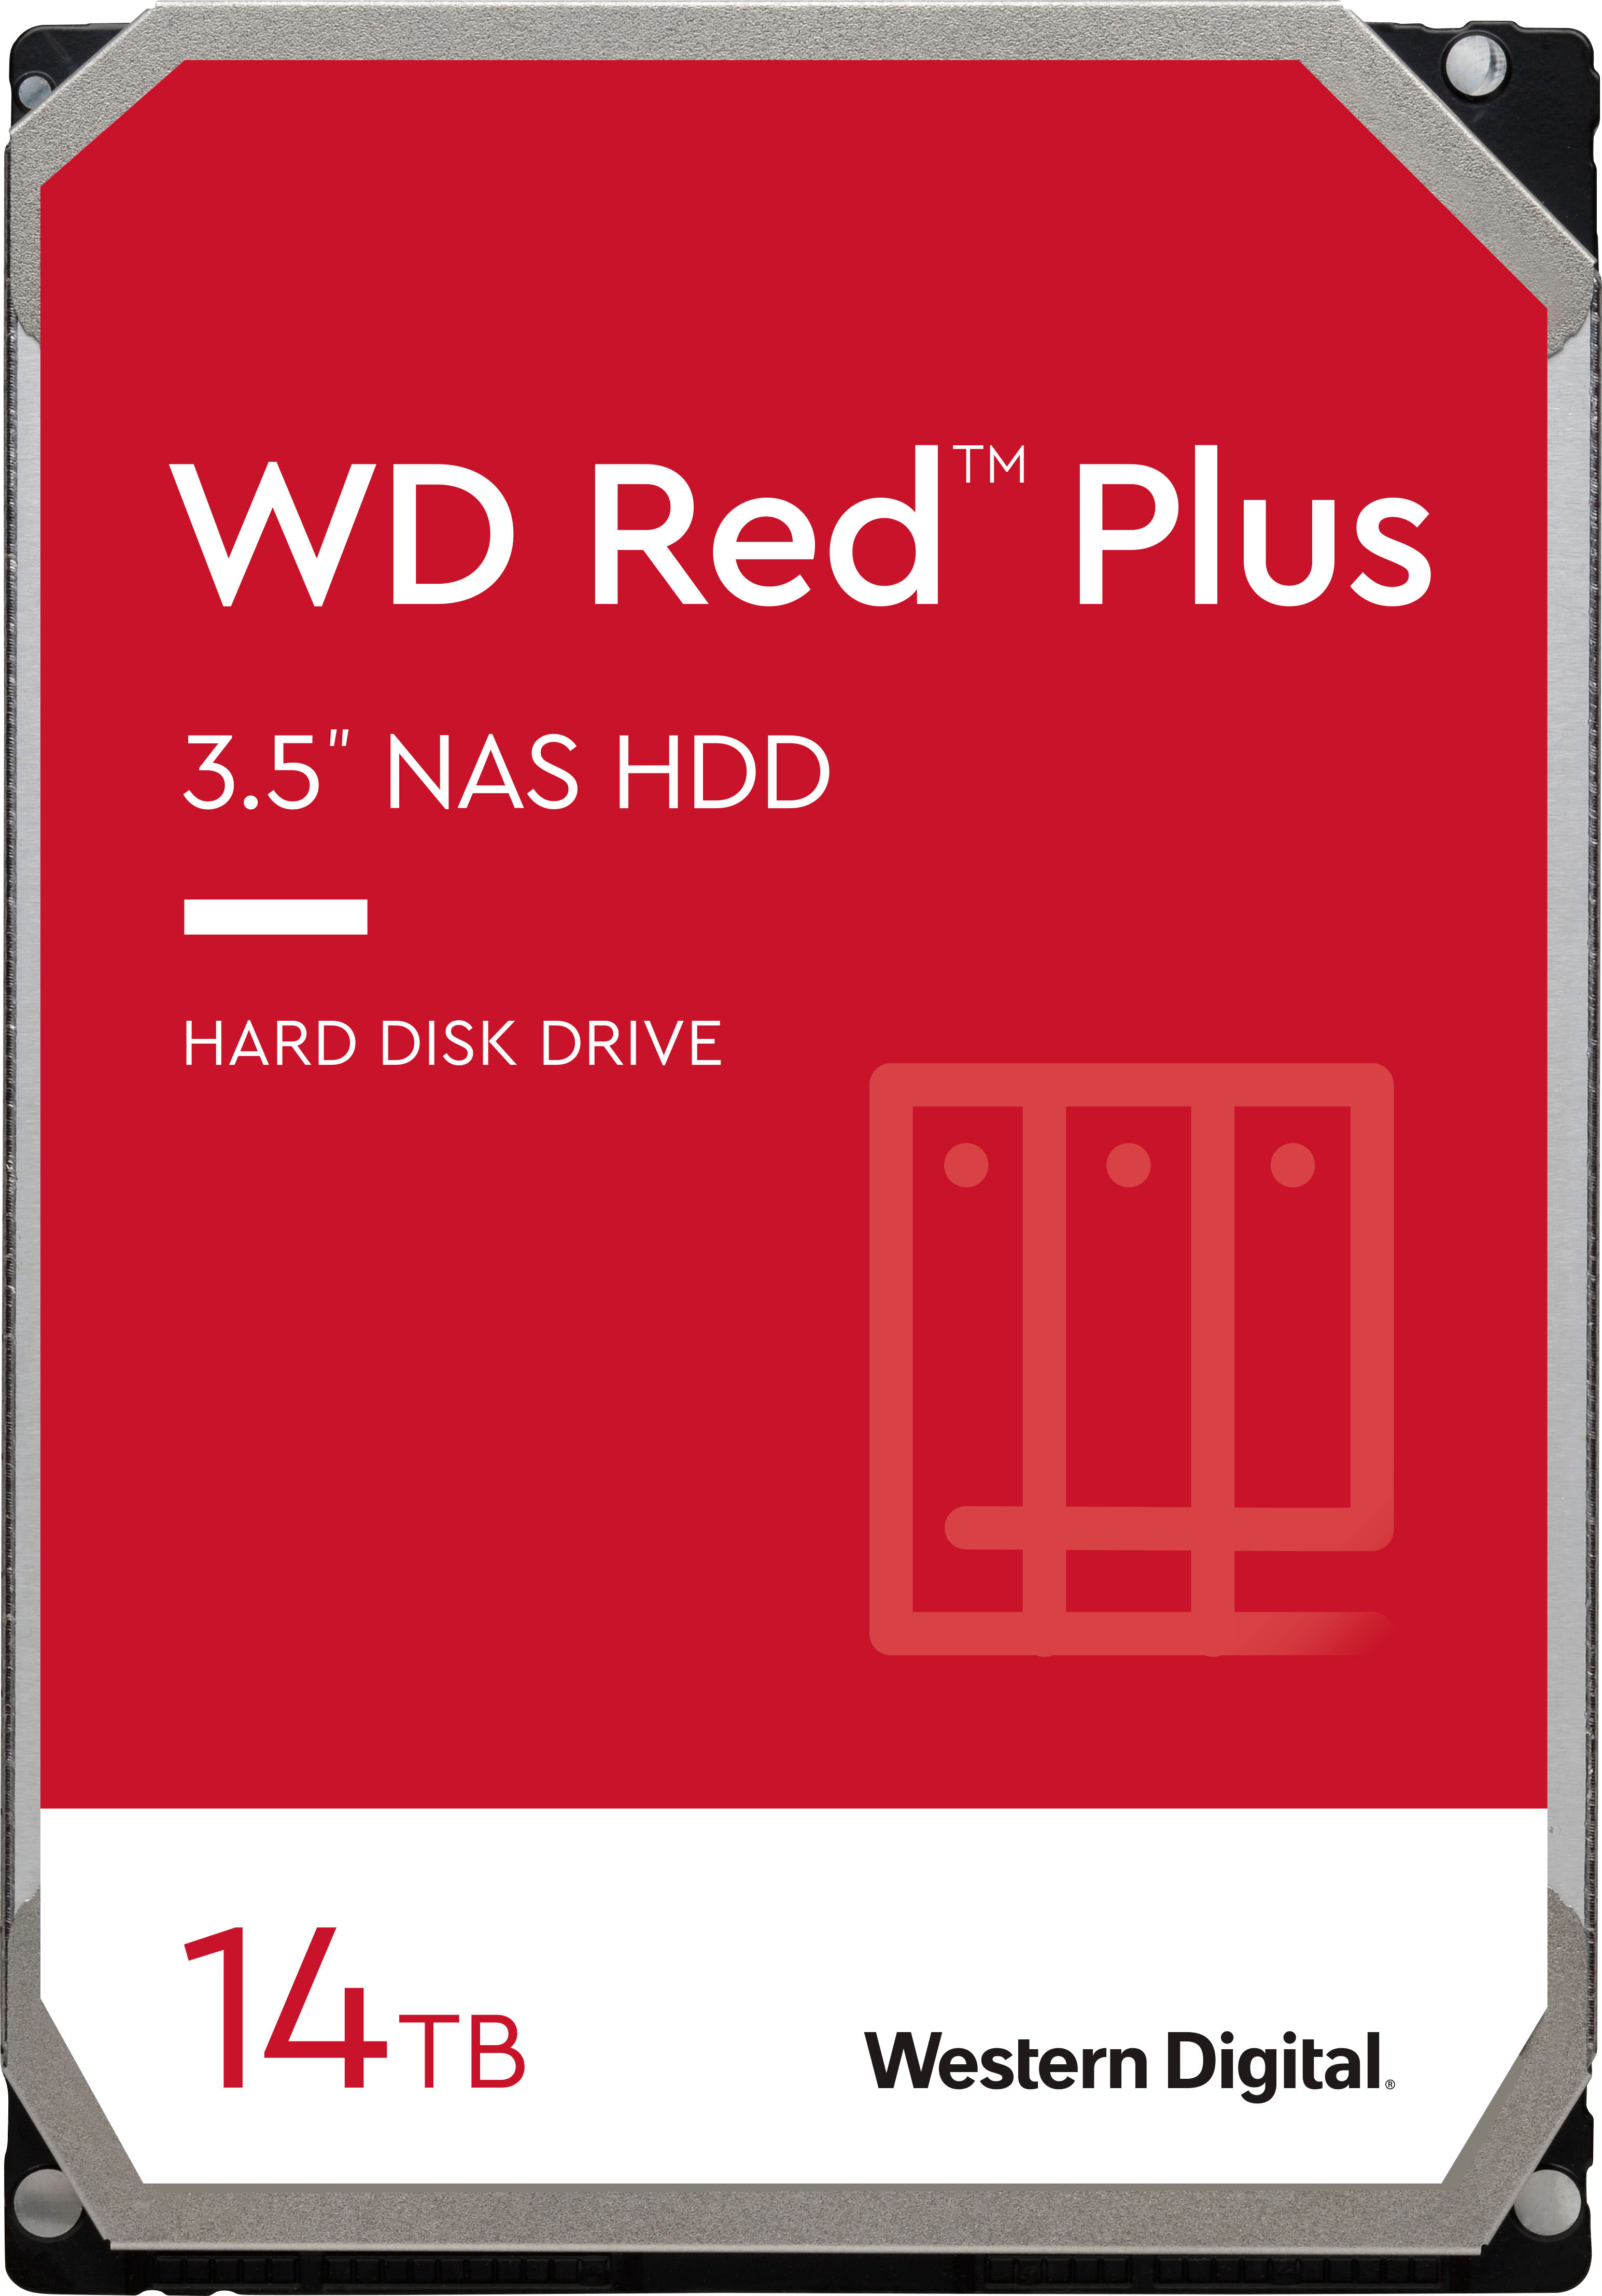 Reduktion agitation Bekendtgørelse WD Red Plus 14TB Internal SATA NAS Hard Drive for Desktops  WDBC9V0140HH1-WRSN - Best Buy